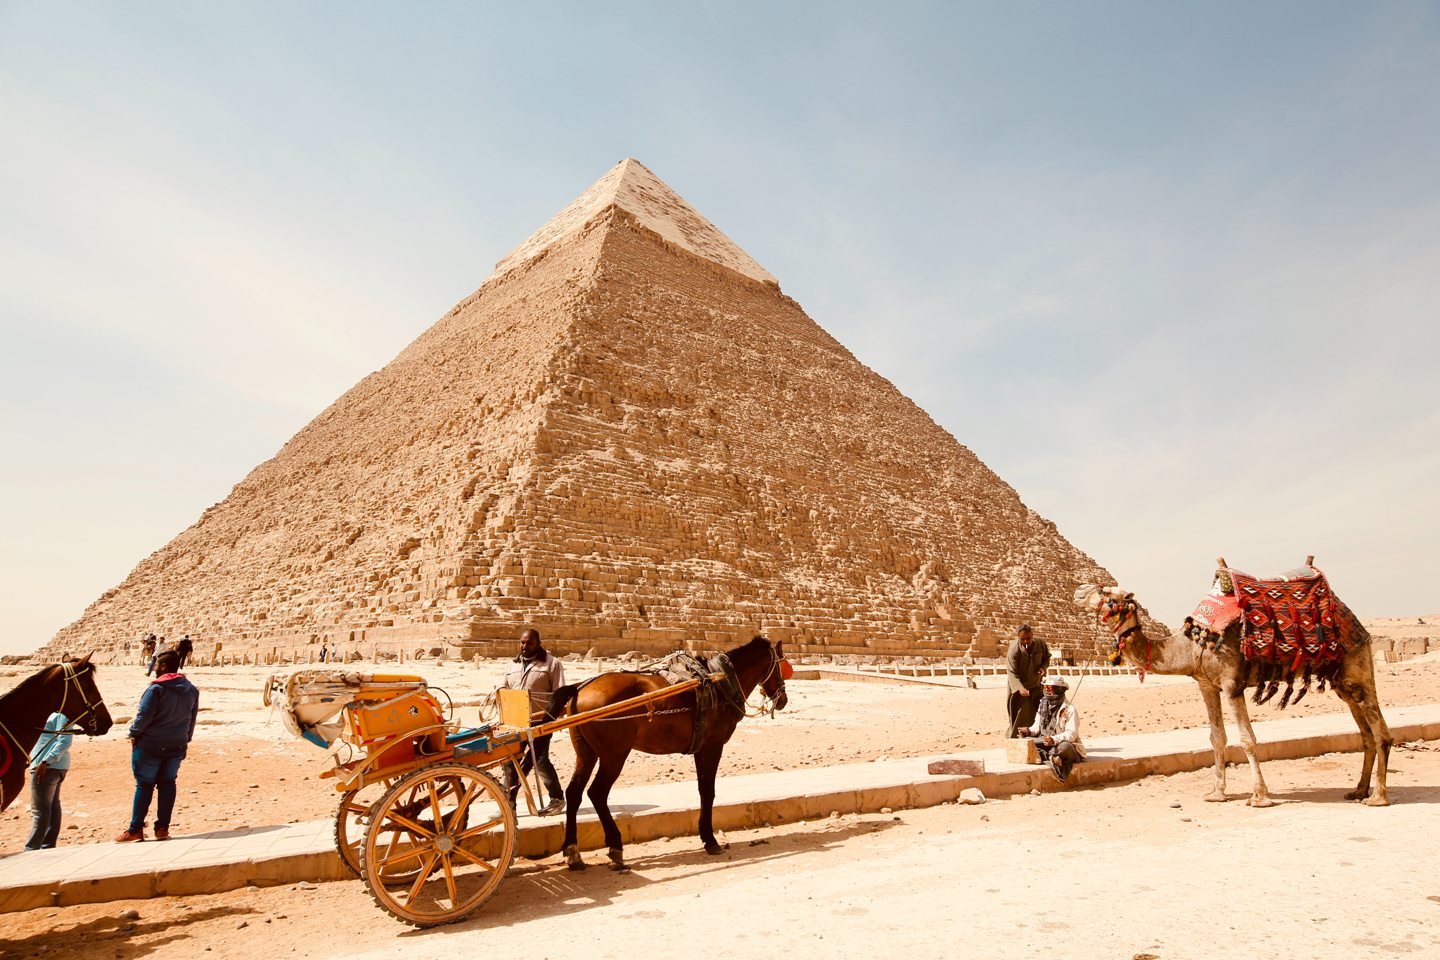 private tour operators in egypt